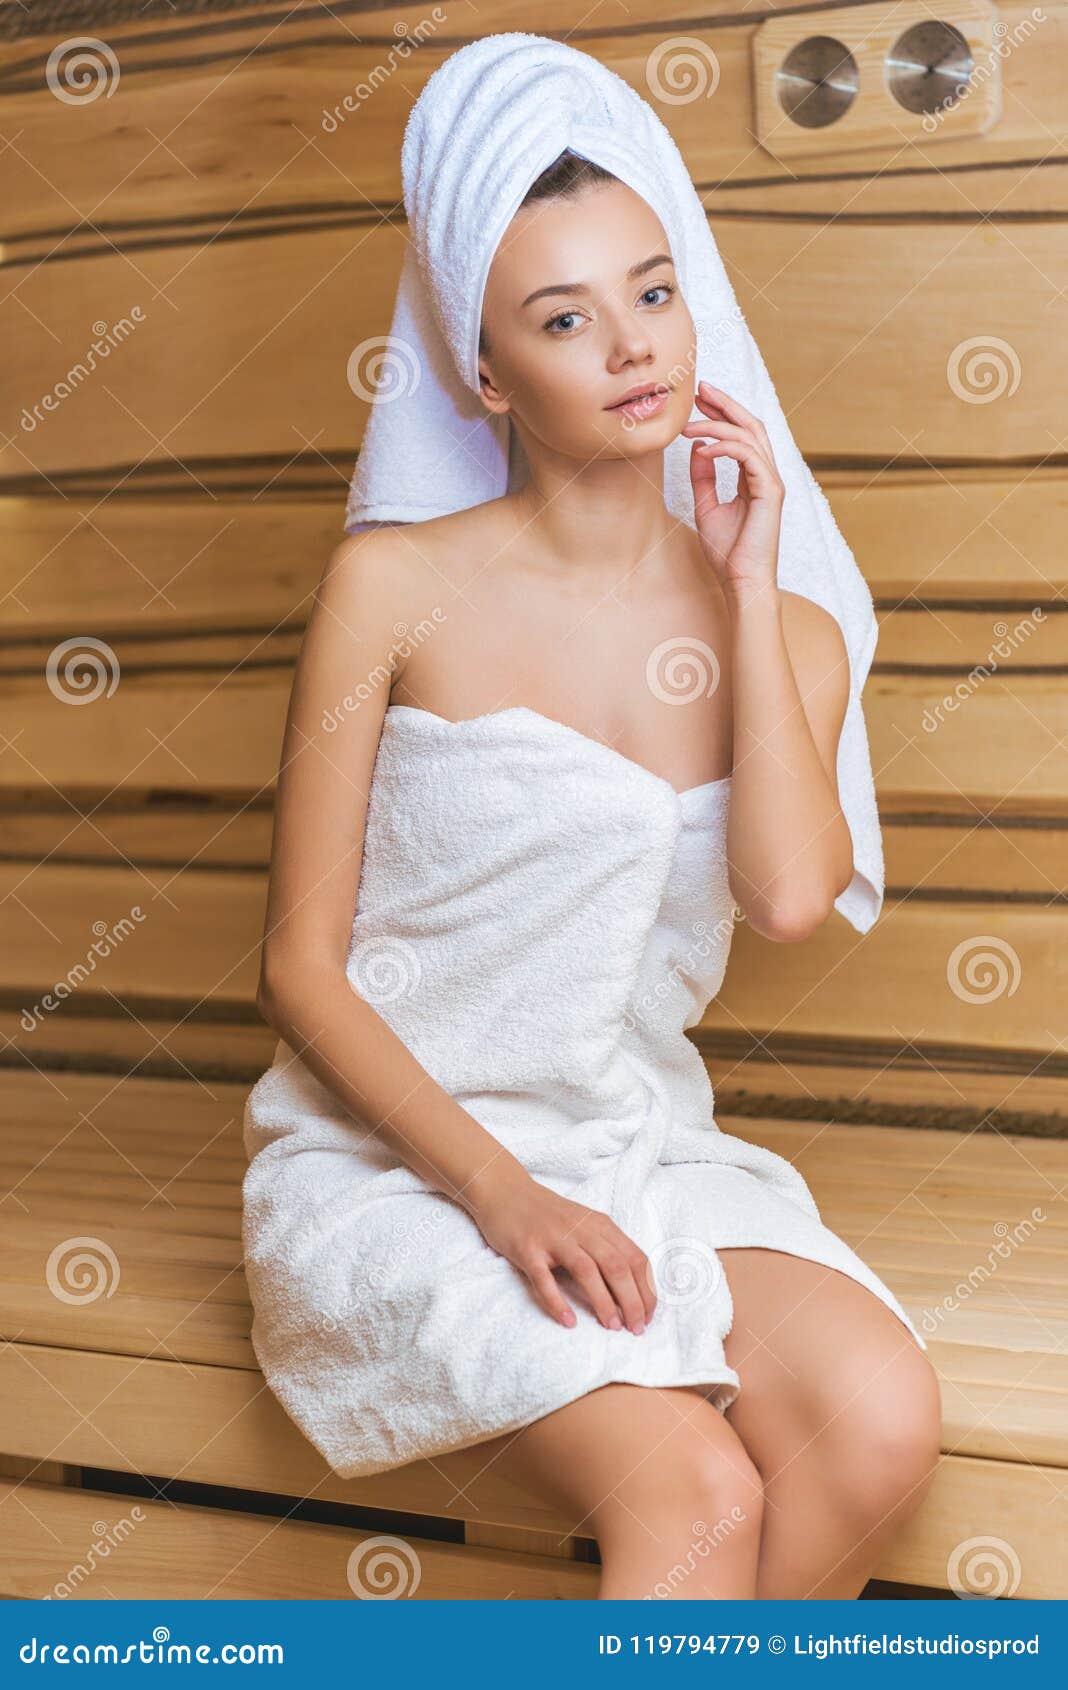 В полотенце 18. Девушка в полотенце. Девушка в бананом пплаьенце. Девушка в бане в полотенце. Фотосессия полотенце девушка.